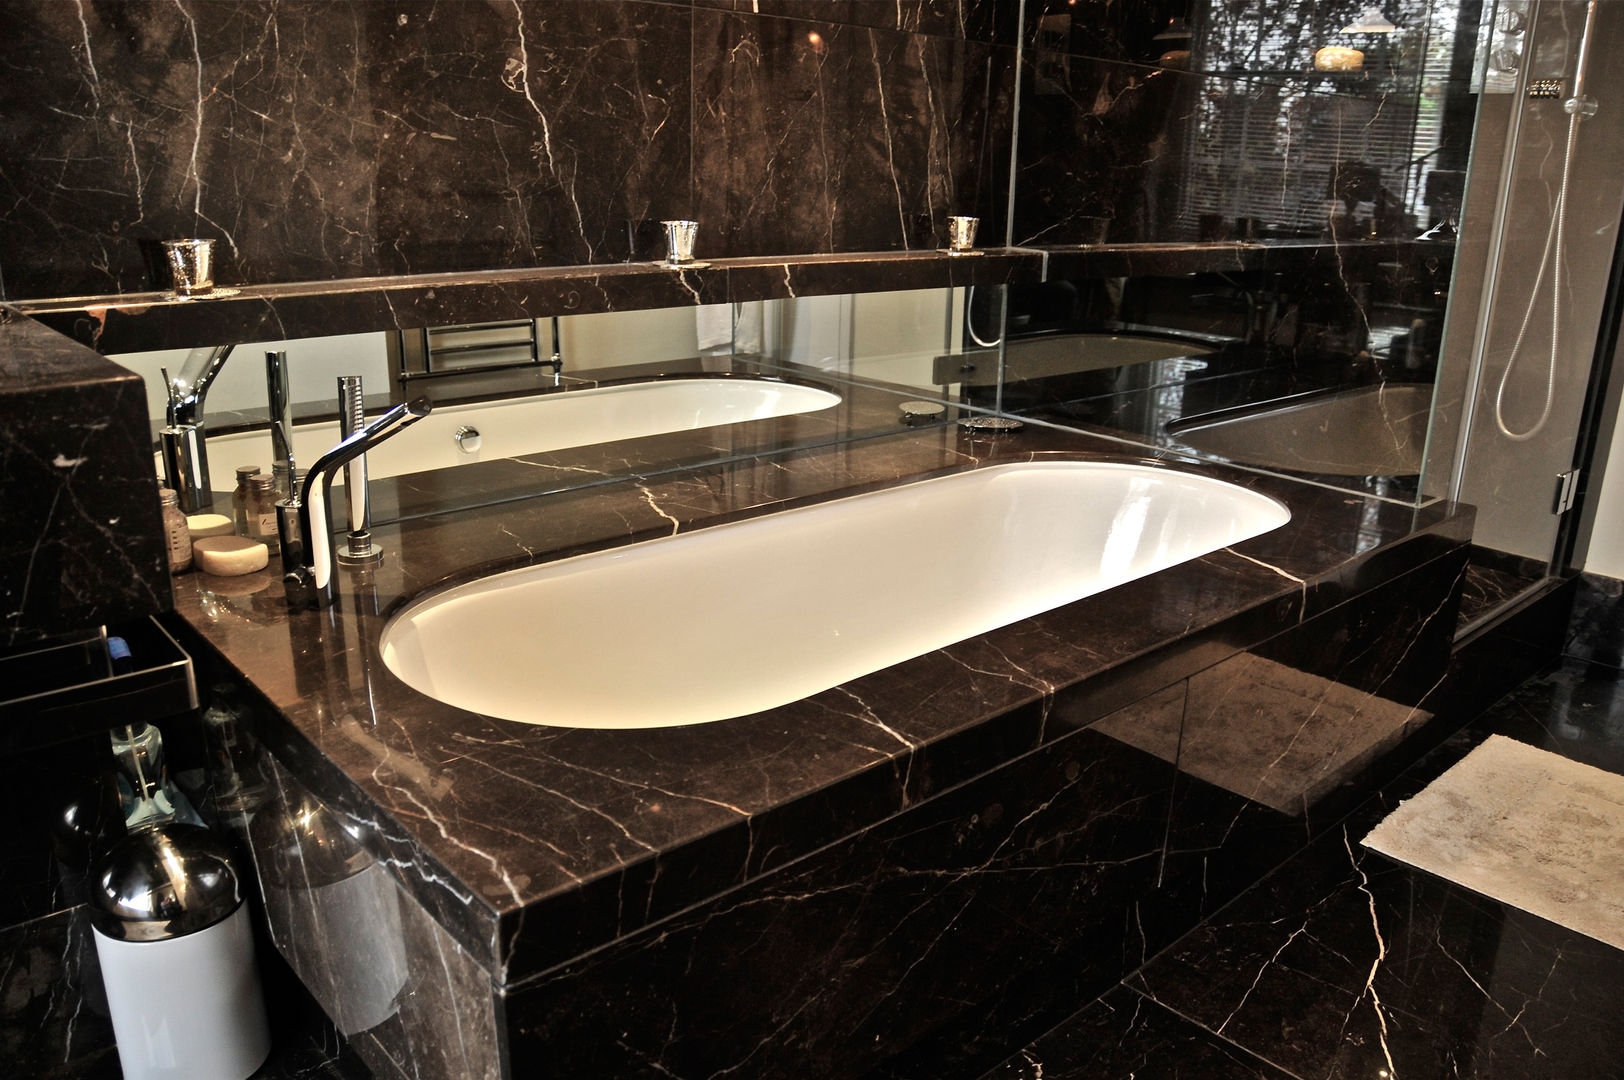 Black Marble Bathroom, Orset Ogle luxury Kitchens & Bathrooms Modern bathroom